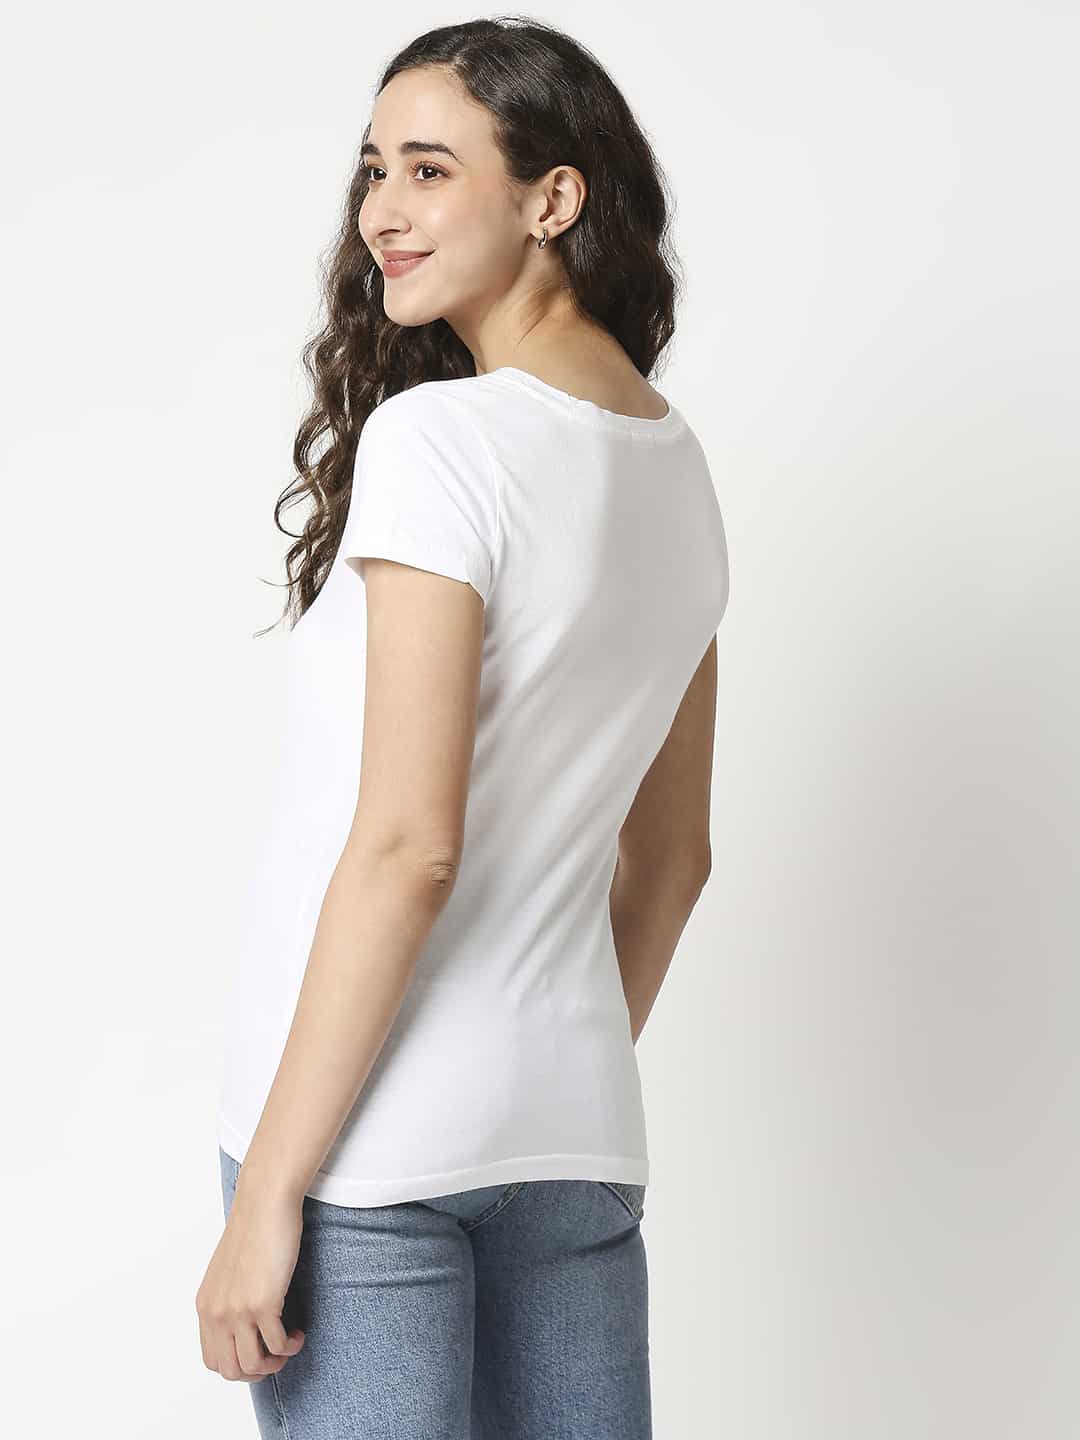 The Manaca Vintage V- neck T-shirt- White